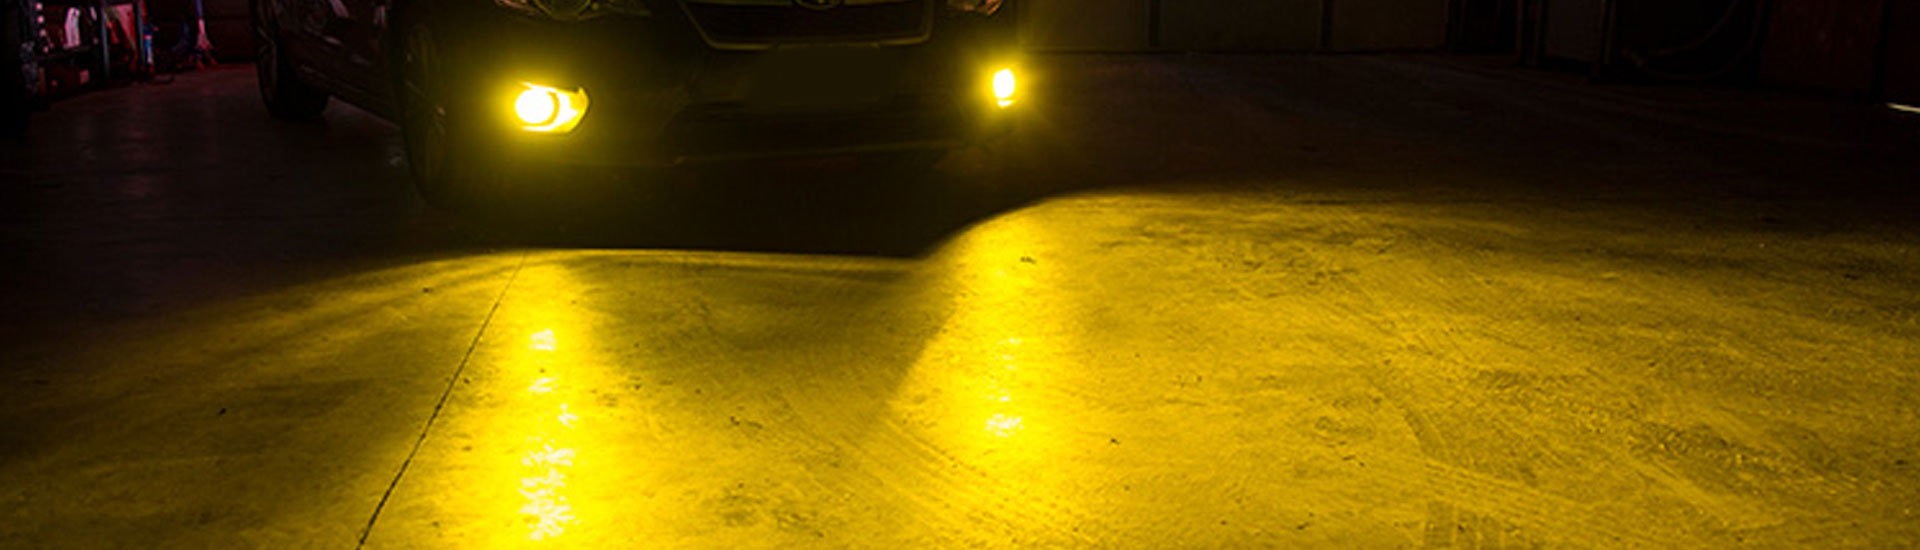 Chrysler PT Cruiser Fog Light Tint Covers